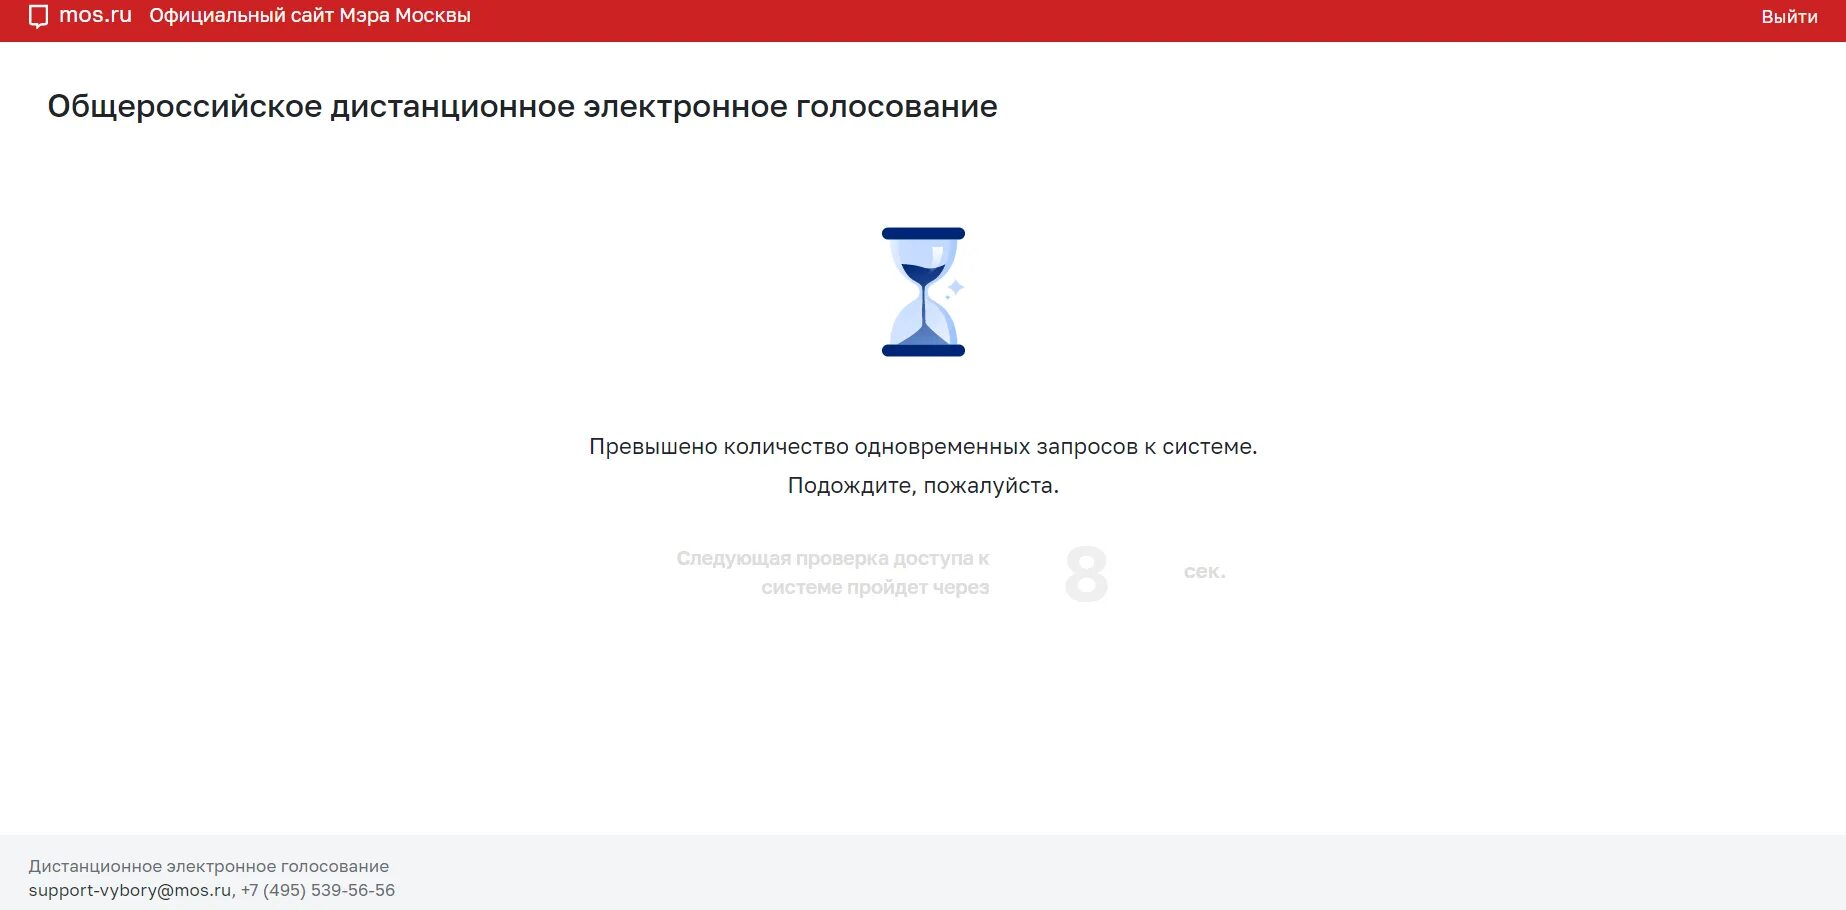 Проблемы дистанционного электронного голосования. Электронное голосование Мос ру. Mos.ru приложение. Вы уже проголосовали Мос ру. Мос ру запись голосование